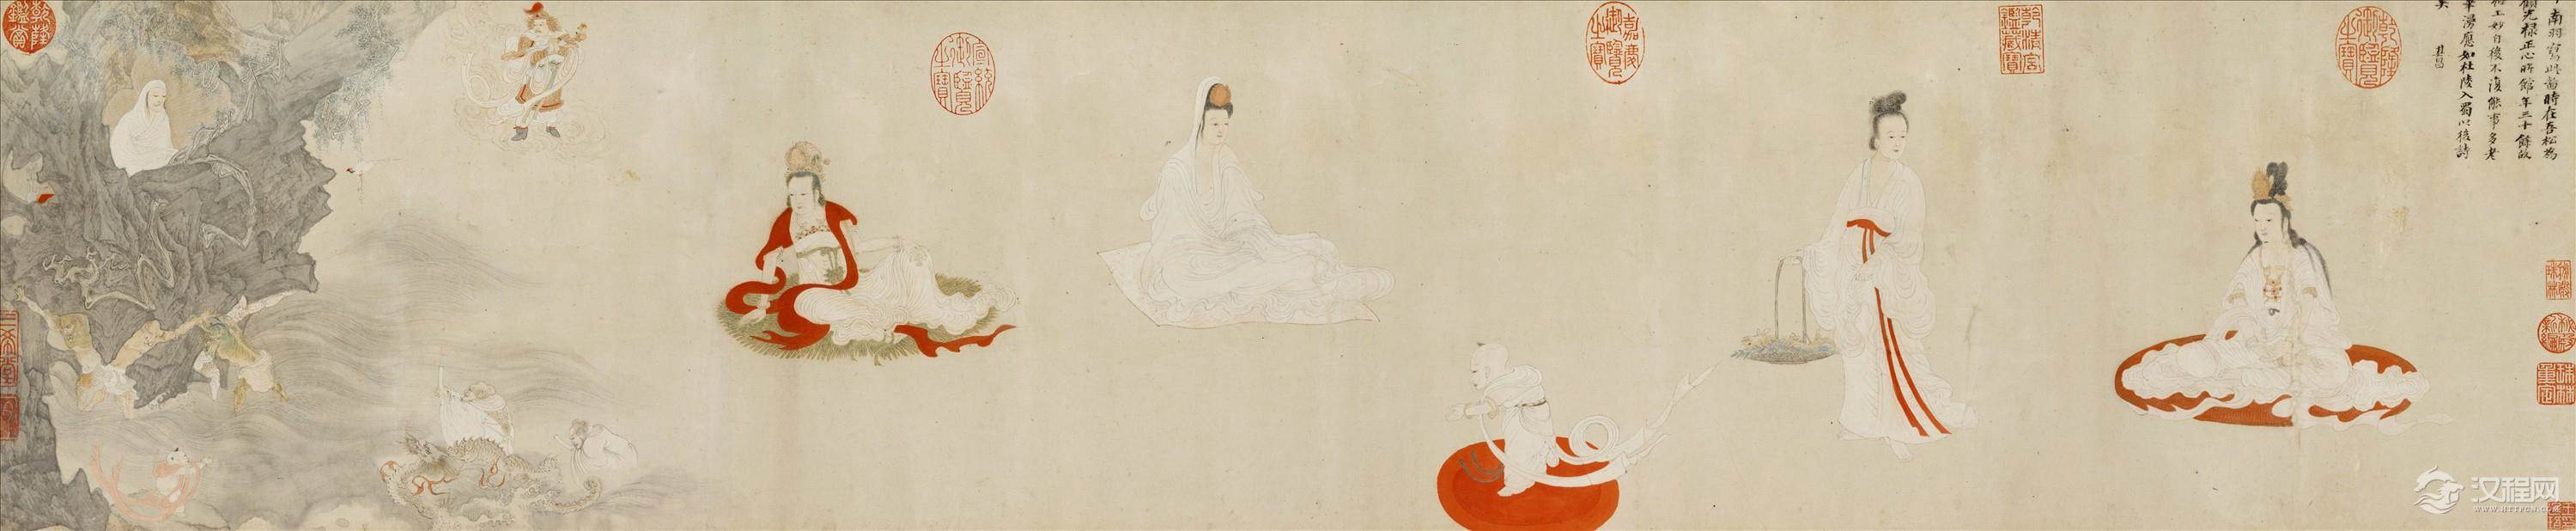 台北故宫典藏绘画